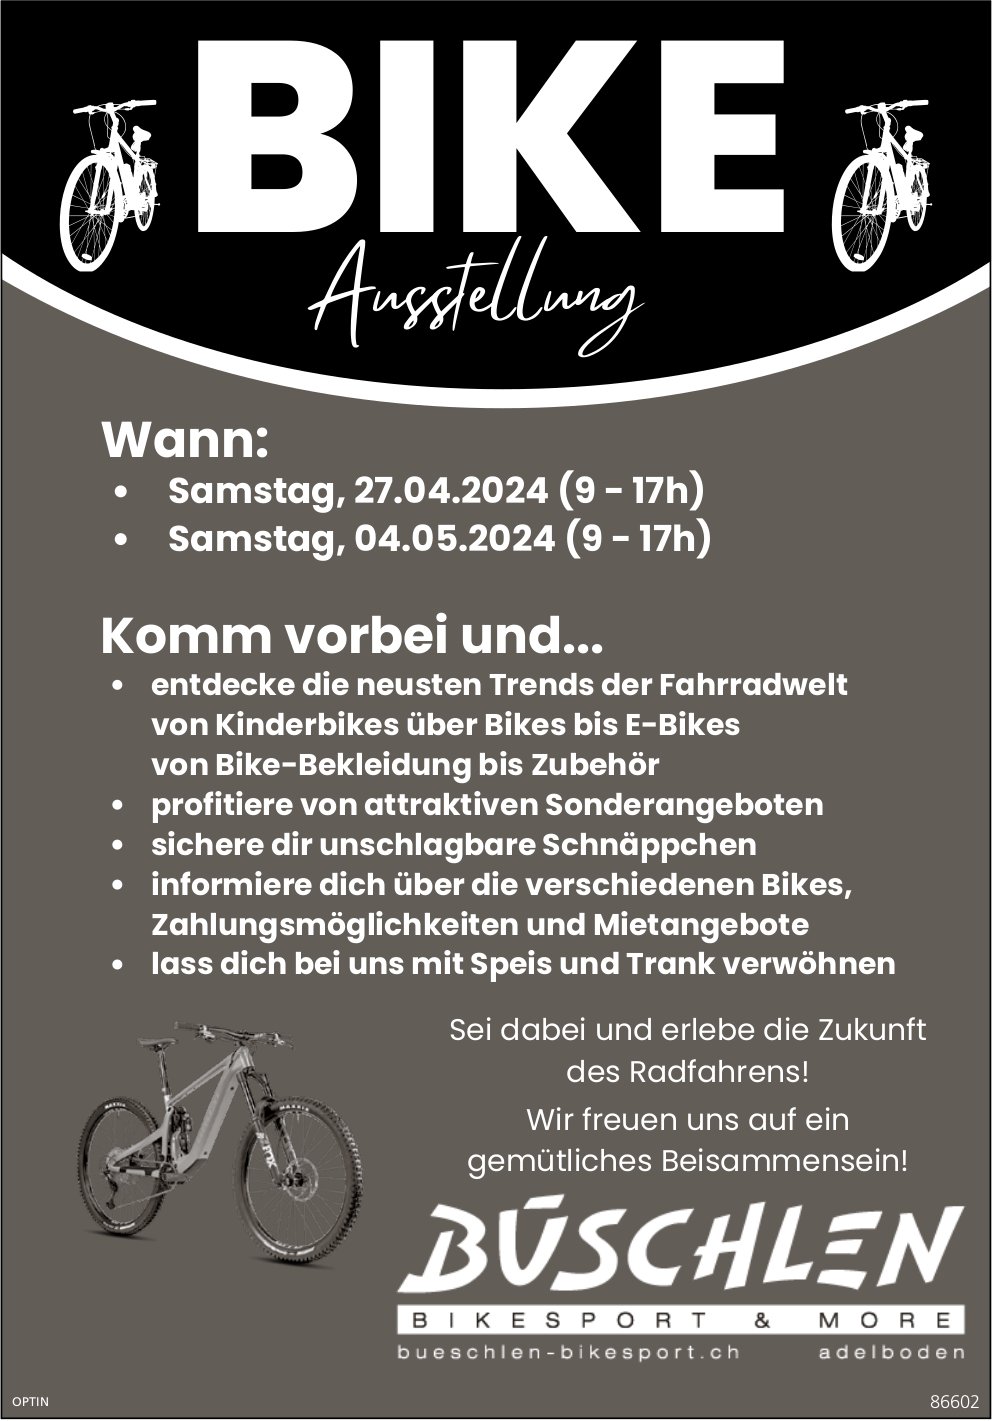 BIKE Ausstellung, 27. April und 4. Mai, Büschlen Bikesport & More, Adelboden